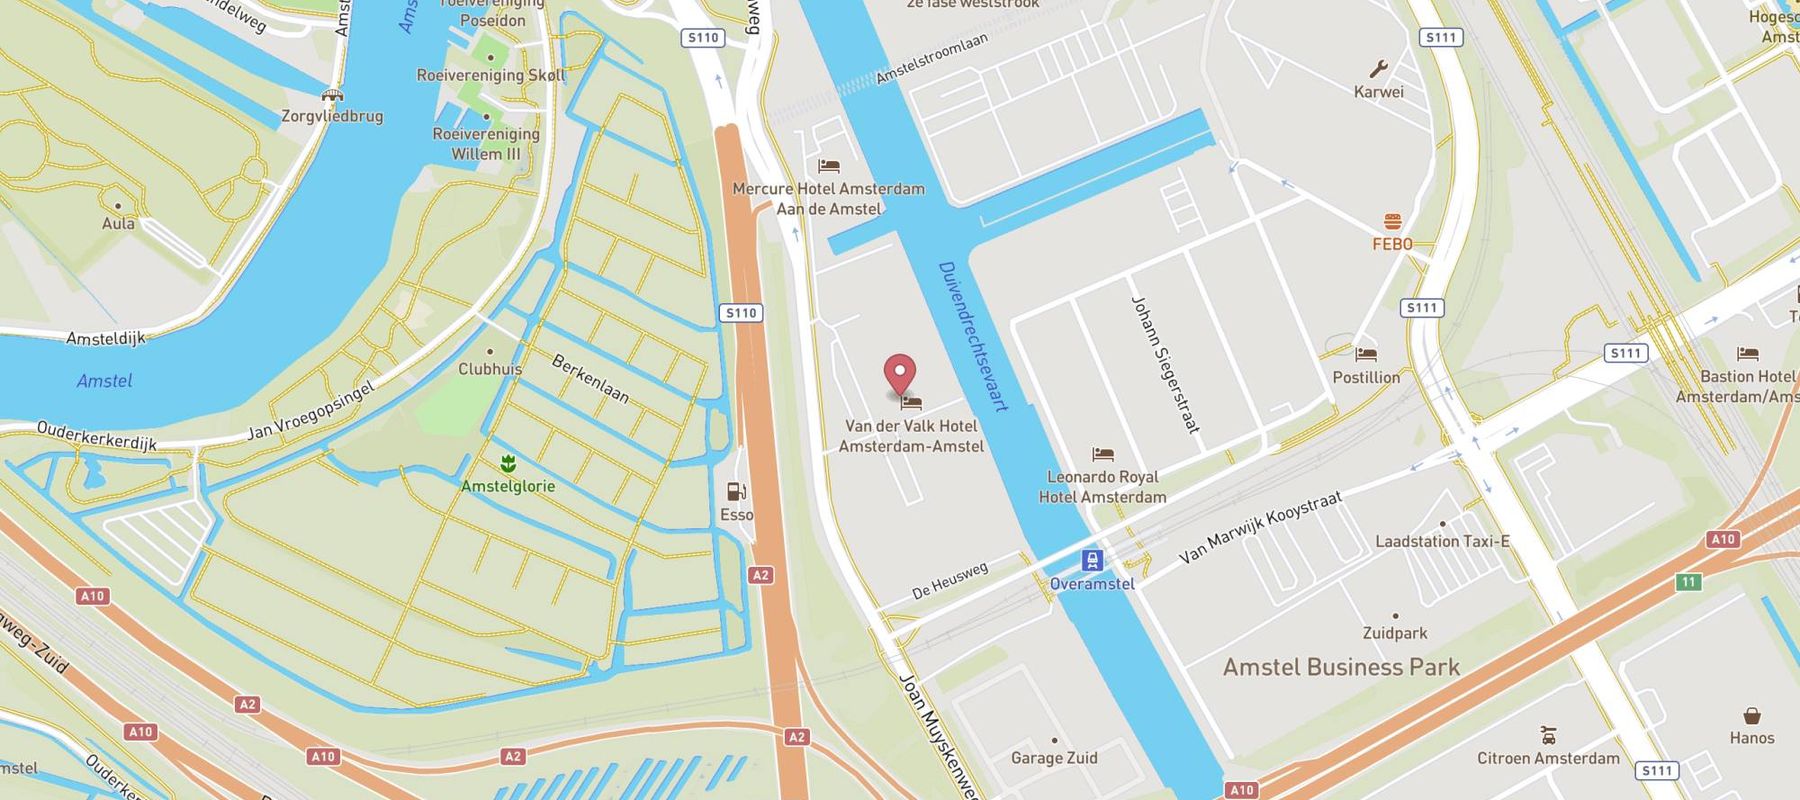 Van der Valk Hotel Amsterdam - Amstel map